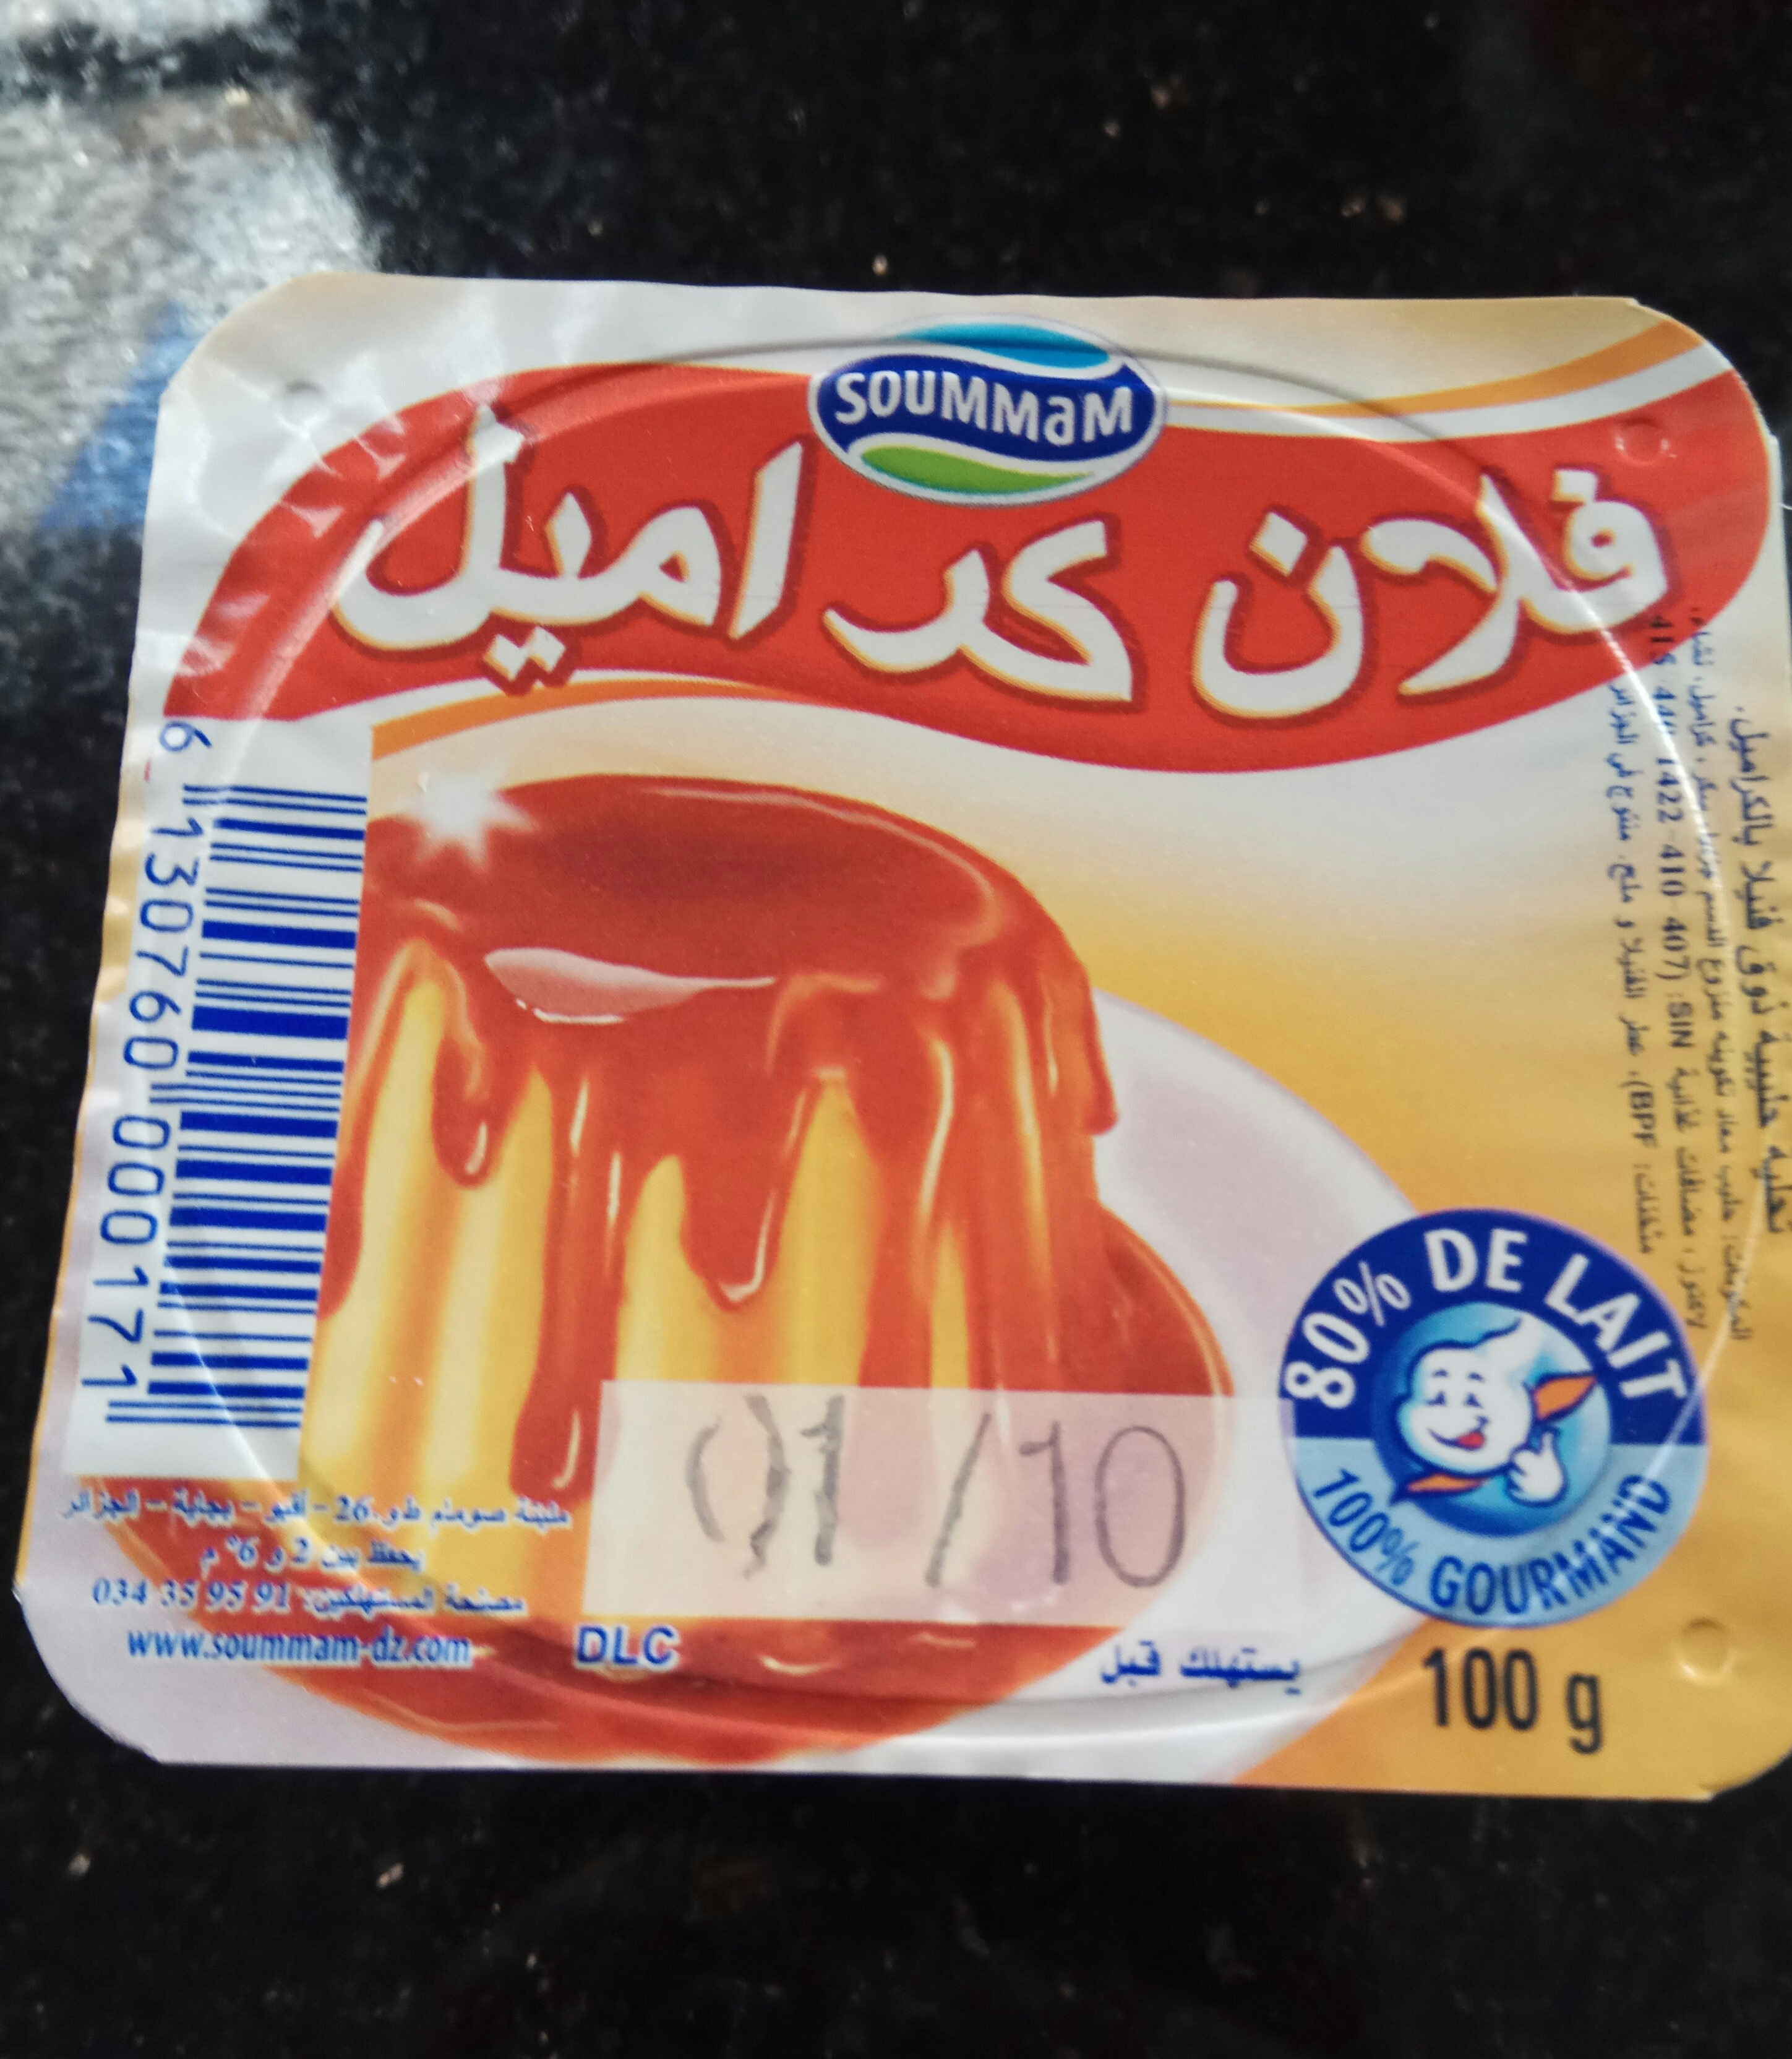 Flan caramel soummam - Product - en